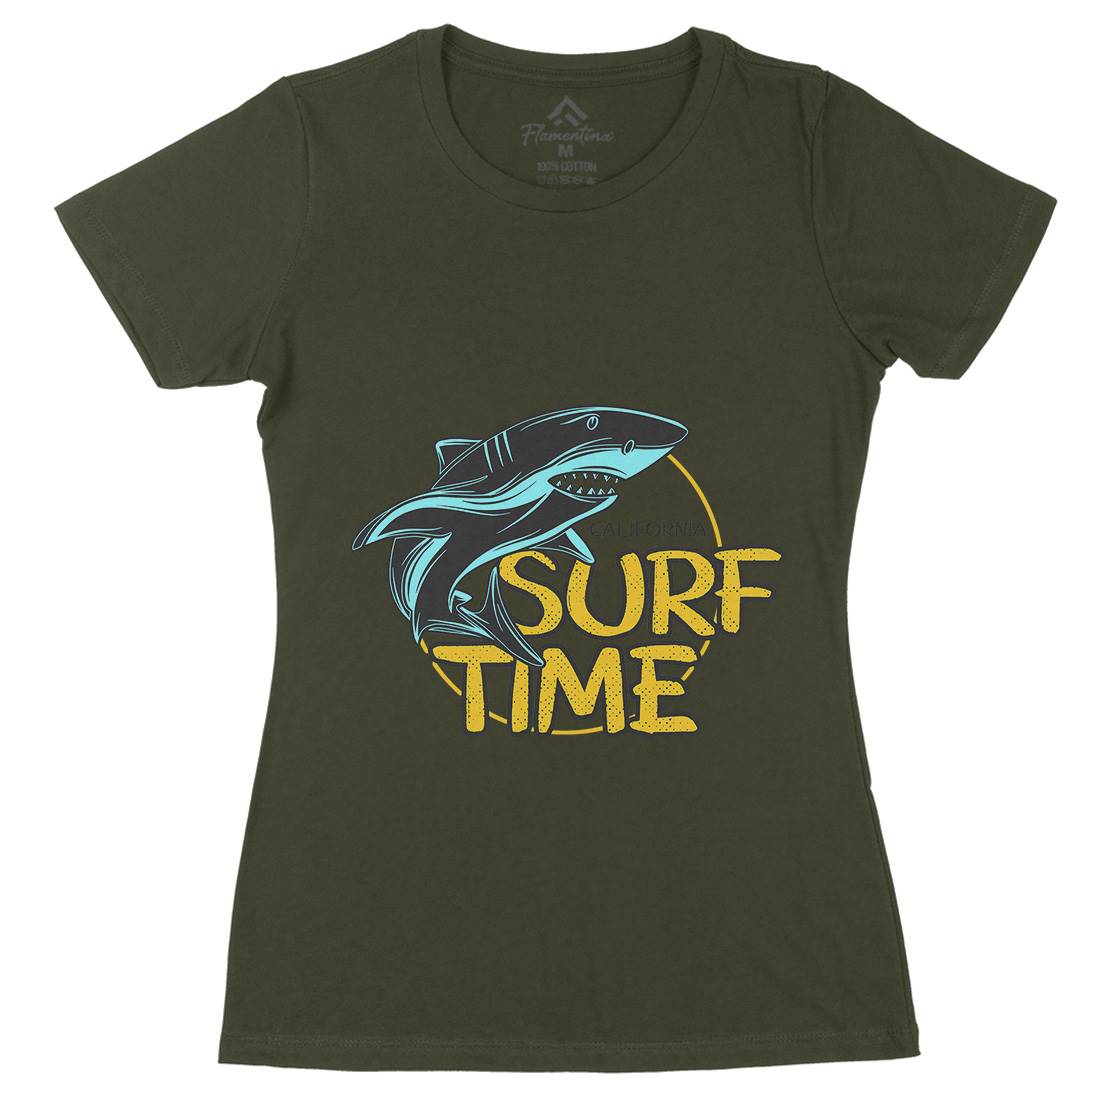 Shark Time Womens Organic Crew Neck T-Shirt Navy D969